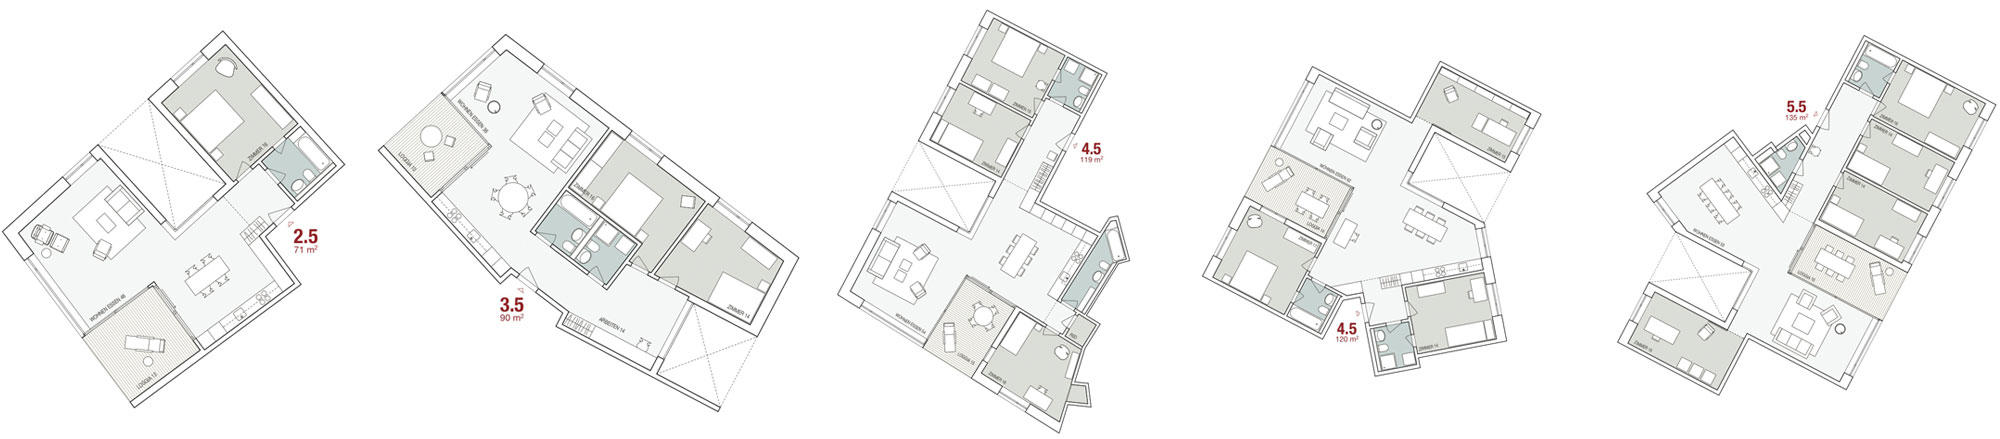 Wohnungstypen (Auswahl) 2.5 bis 5.5 Zimmer